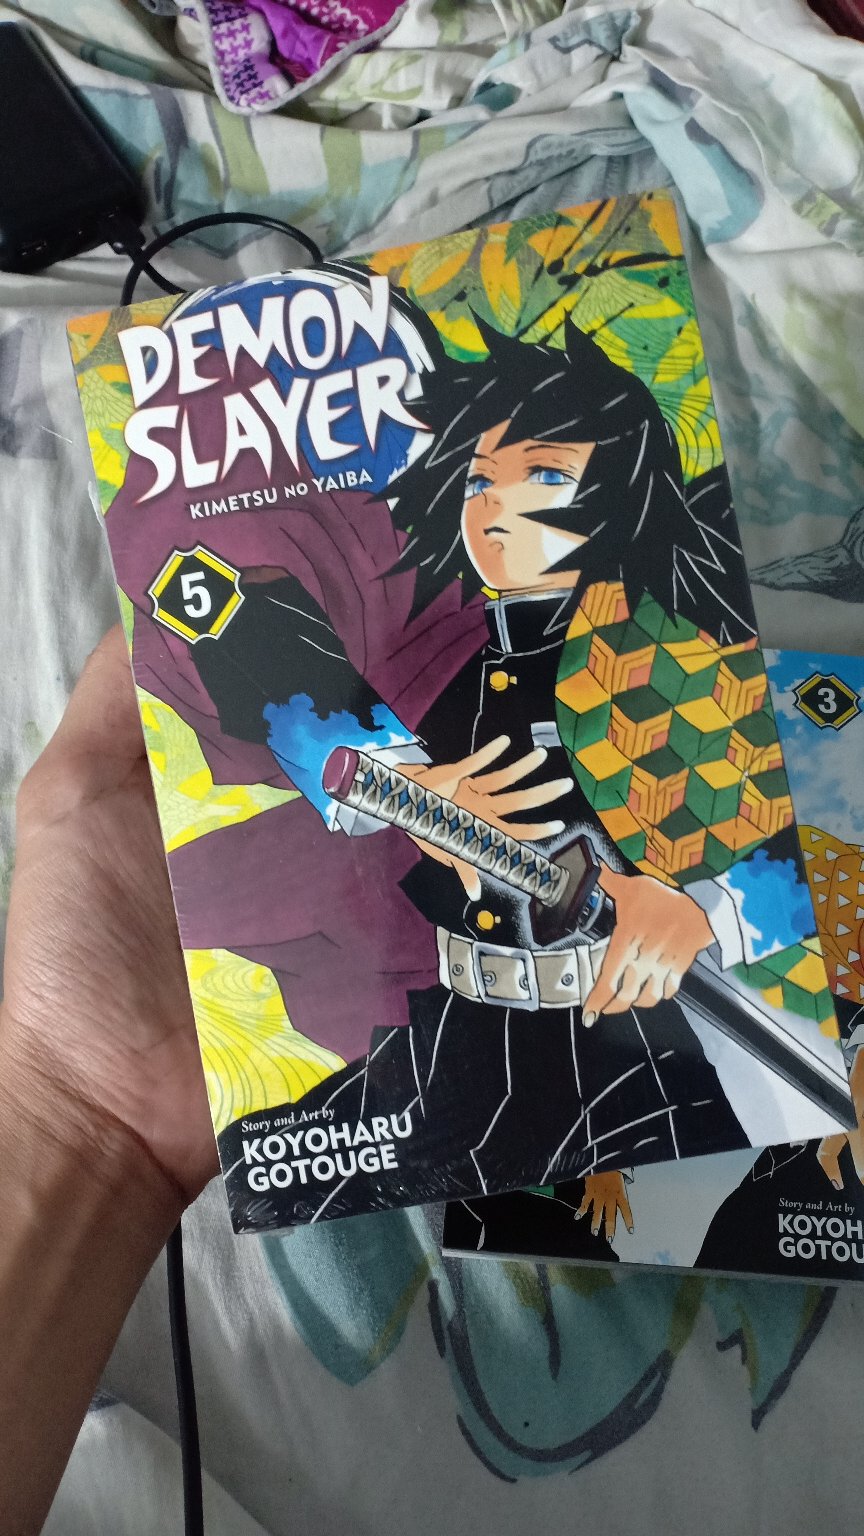 Demon Slayer Kimetsu No Yaiba Vol 5 Paperback By Koyoharu Gotouge Shopee Philippines